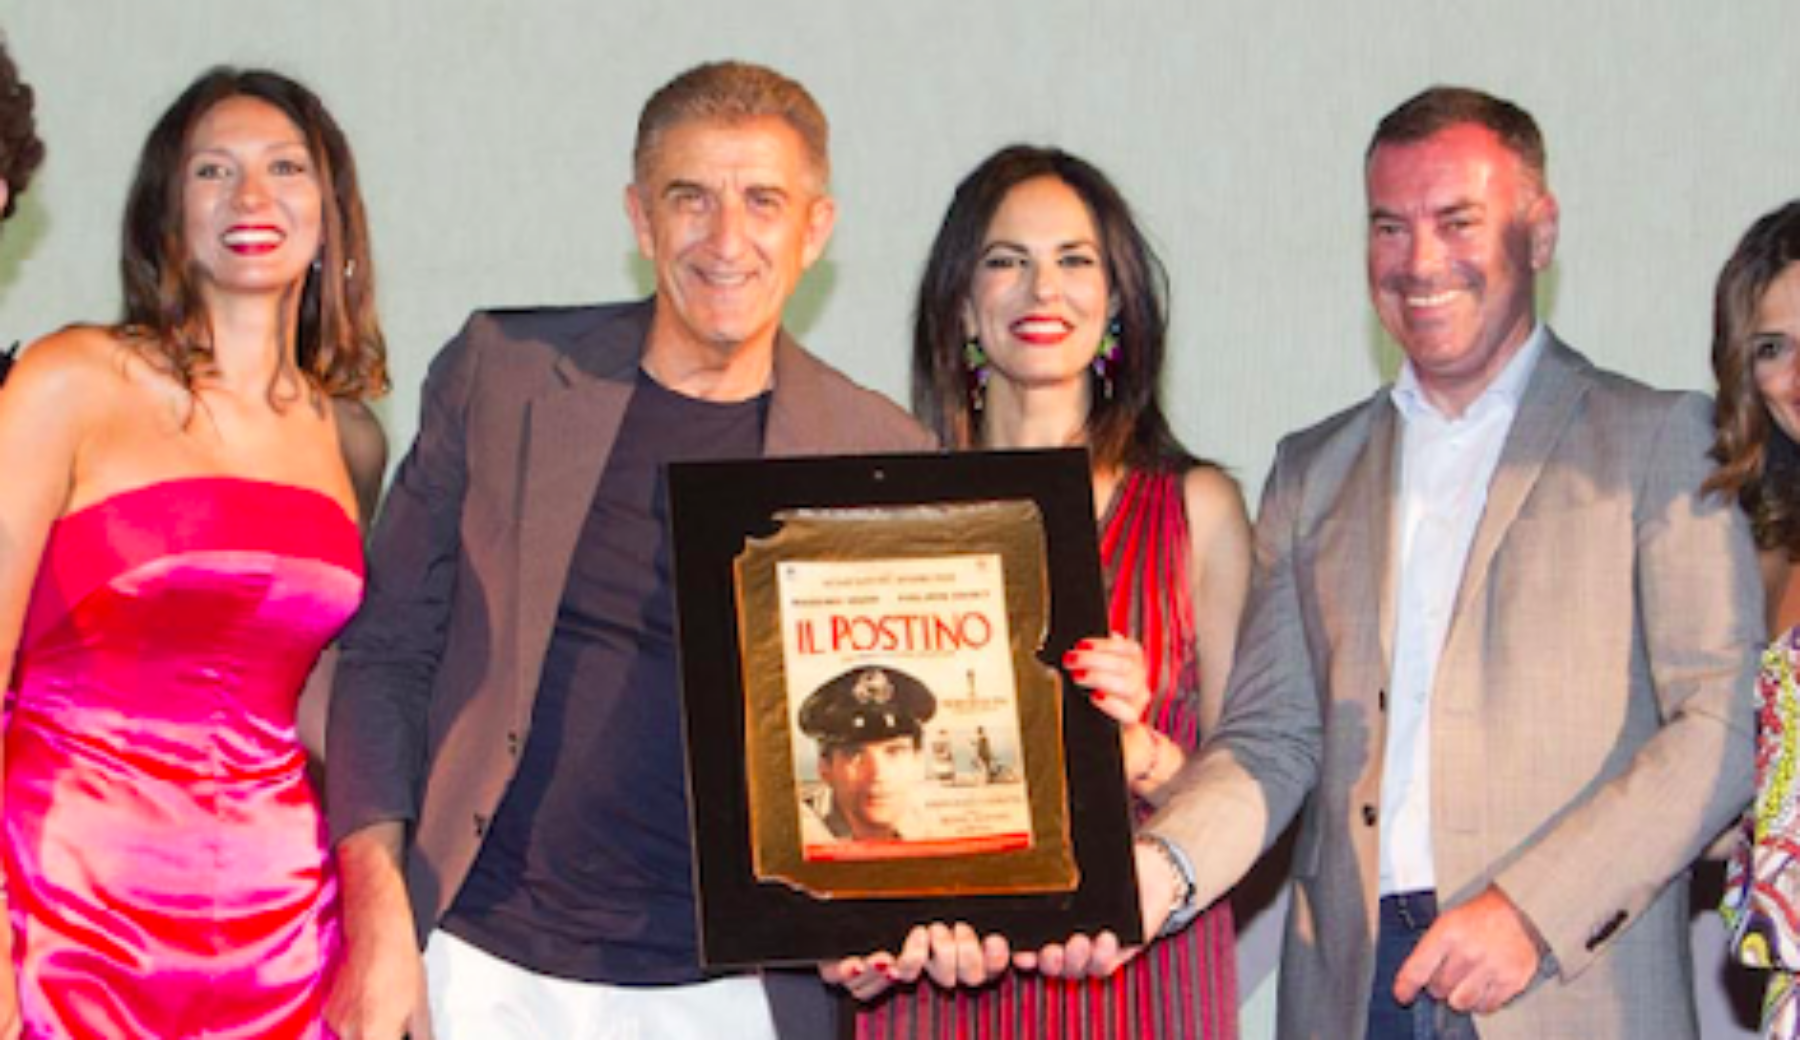 Ezio Greggio riceve il Premio Massimo Troisi: MareFestival, preziosa occasione per ricordare Troisi, “poeta del Cinema”